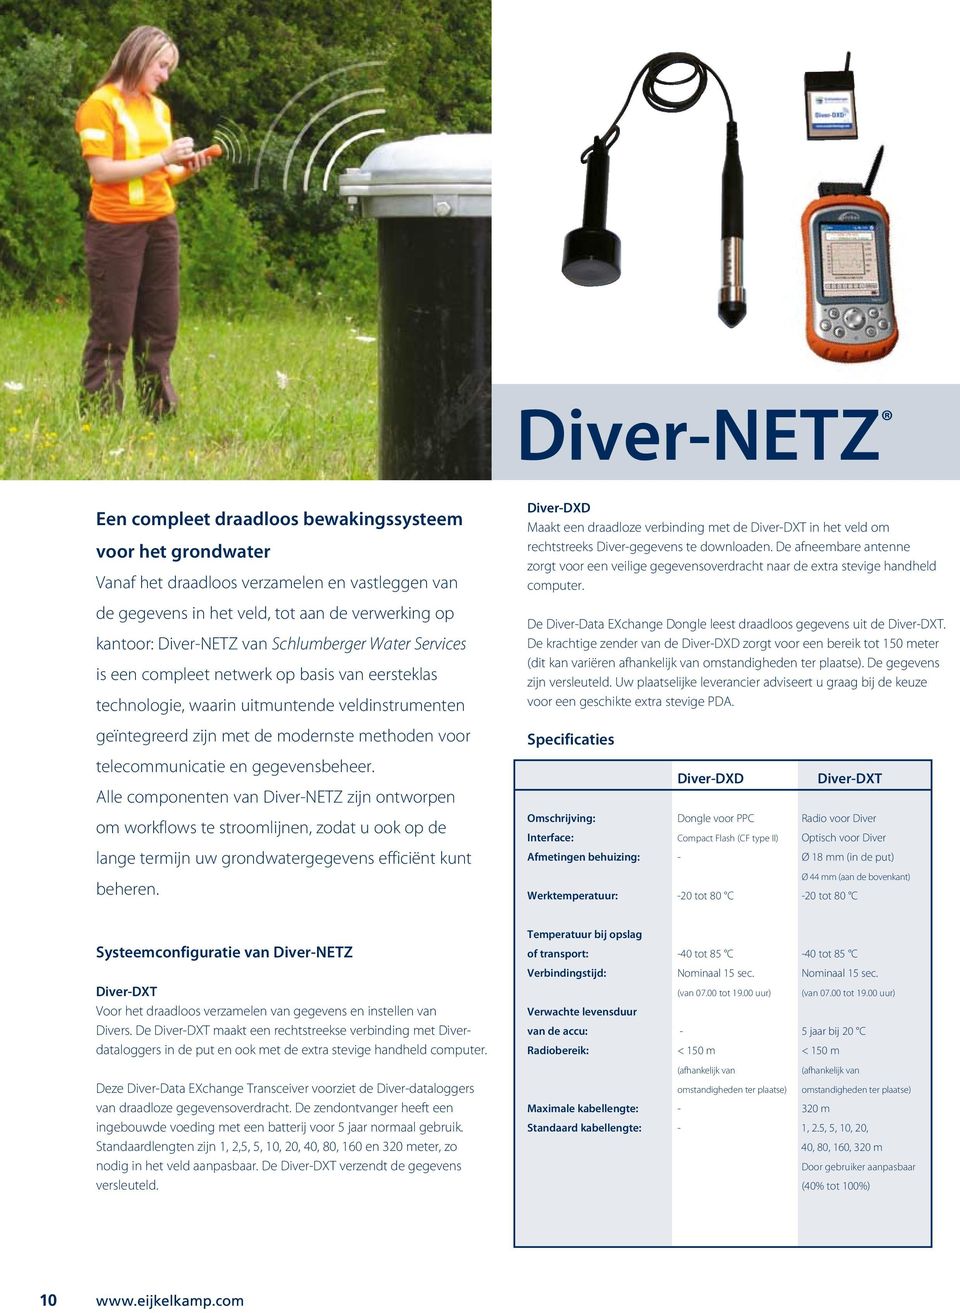 gegevensbeheer. Alle componenten van Diver-NETZ zijn ontworpen om workflows te stroomlijnen, zodat u ook op de lange termijn uw grondwatergegevens efficiënt kunt beheren.